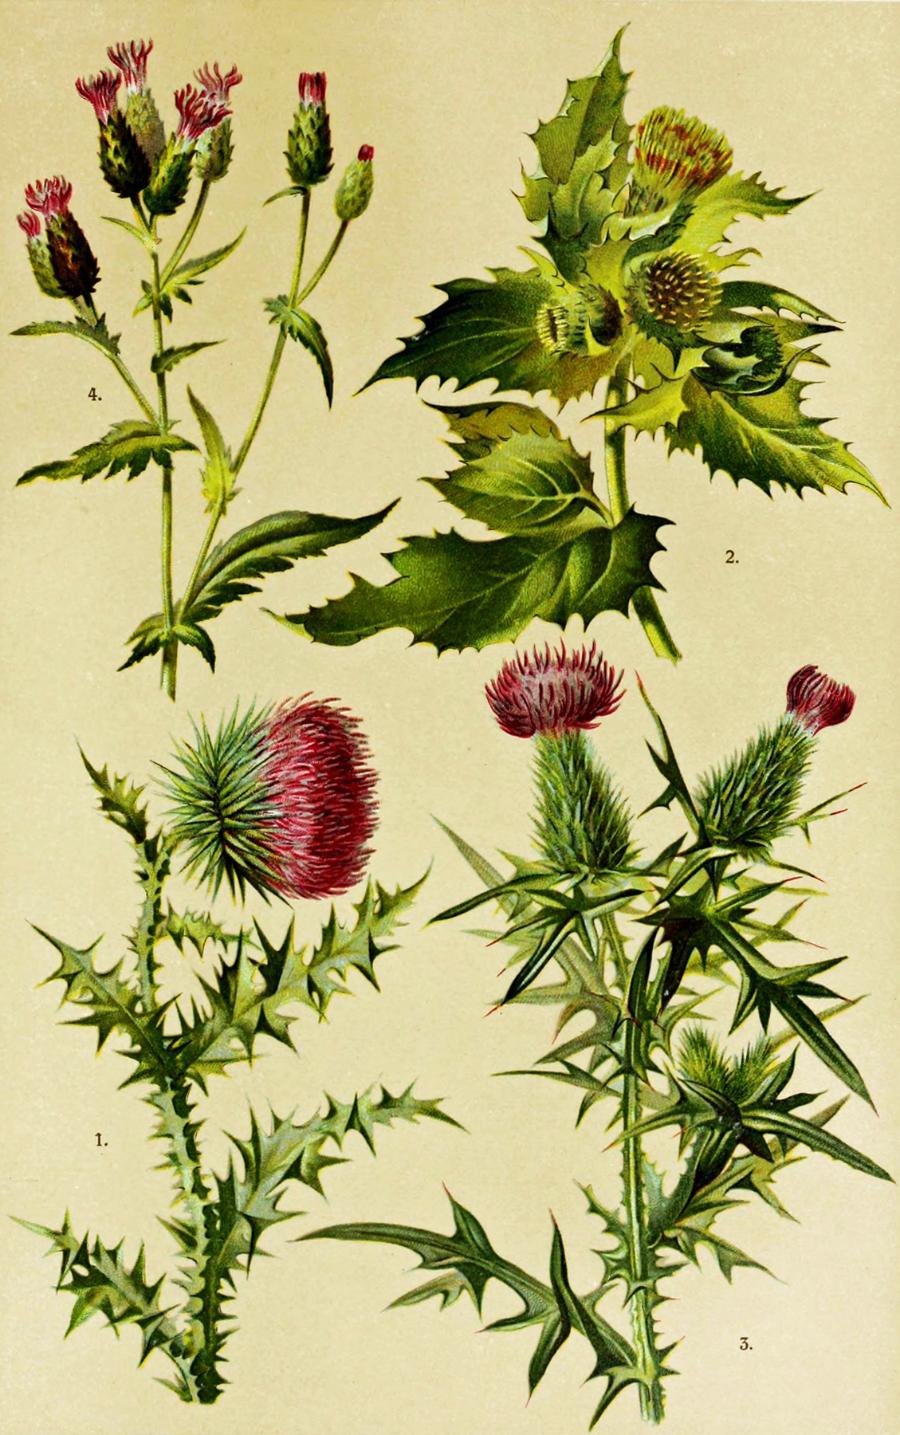 1. Carduus nutans, 2. Cirisum oleraceum, 3. Cirisum lanceolatum, 4. Serratula tinctoria. Ilustracja z „Hoffmann-Dennert Botanischer Bilderatlas, nach dem naturlichen Pflanzensystem”, 1911 r.